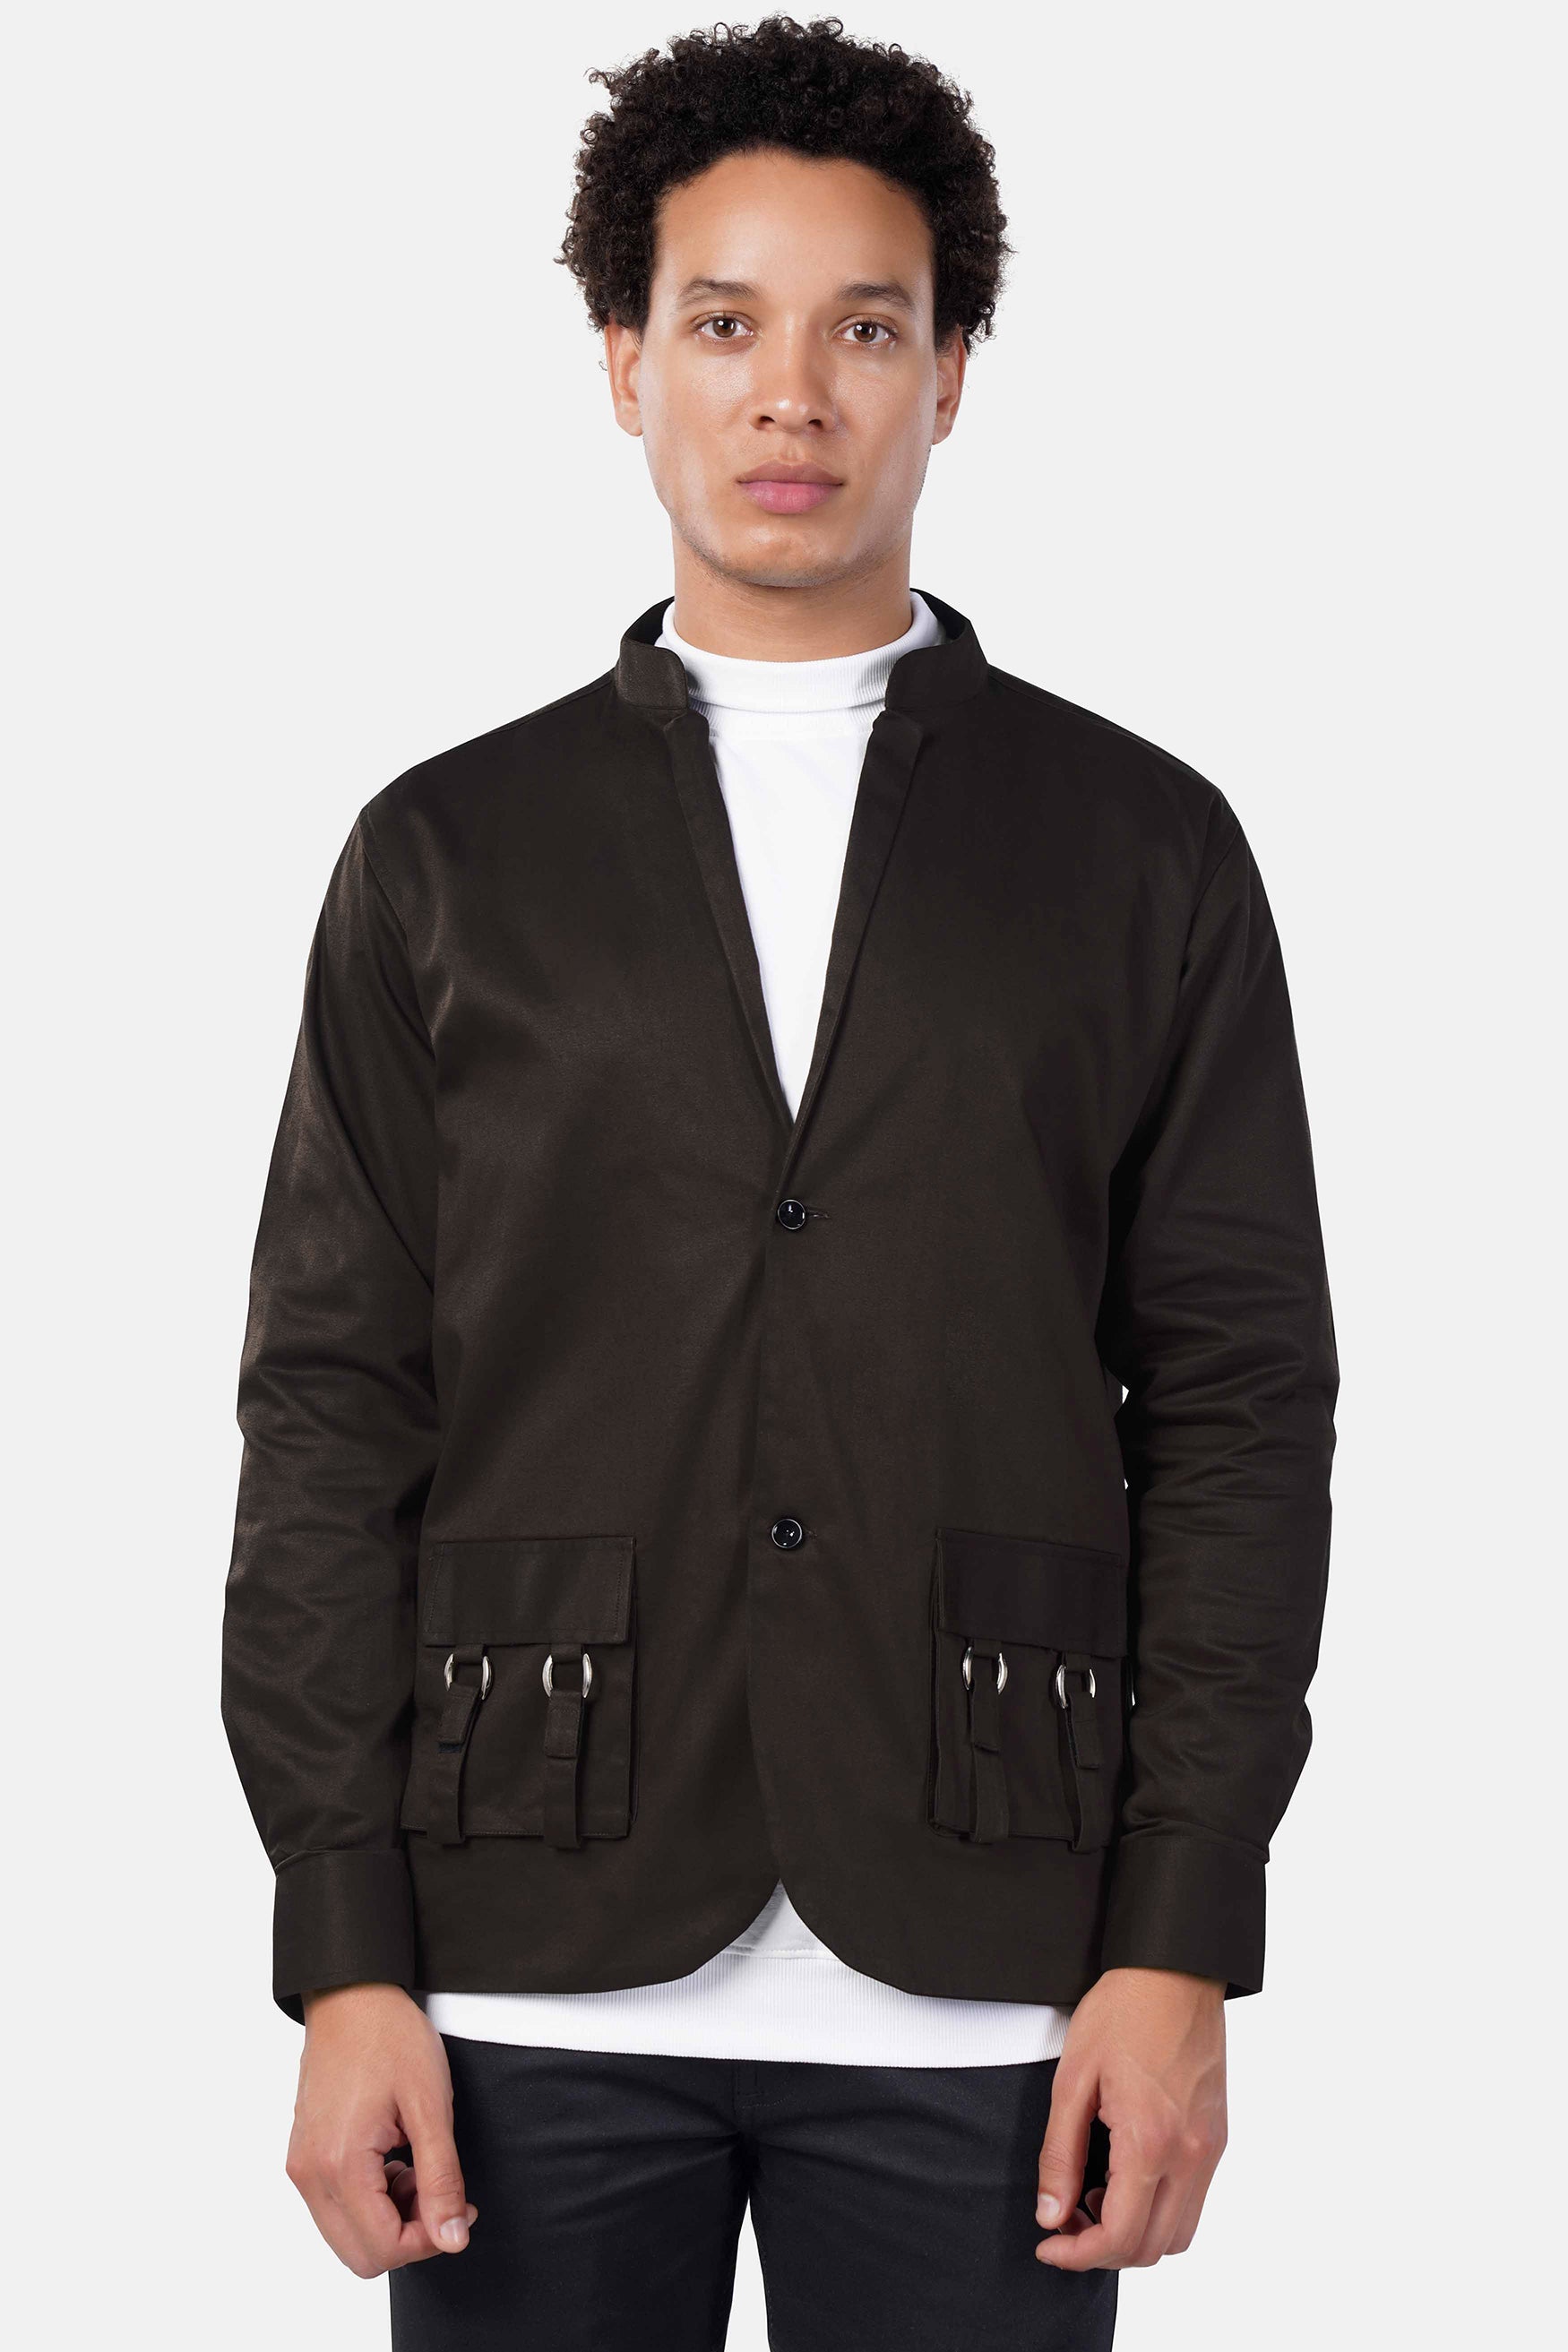 Acadia Brown Premium Cotton Designer Jacket